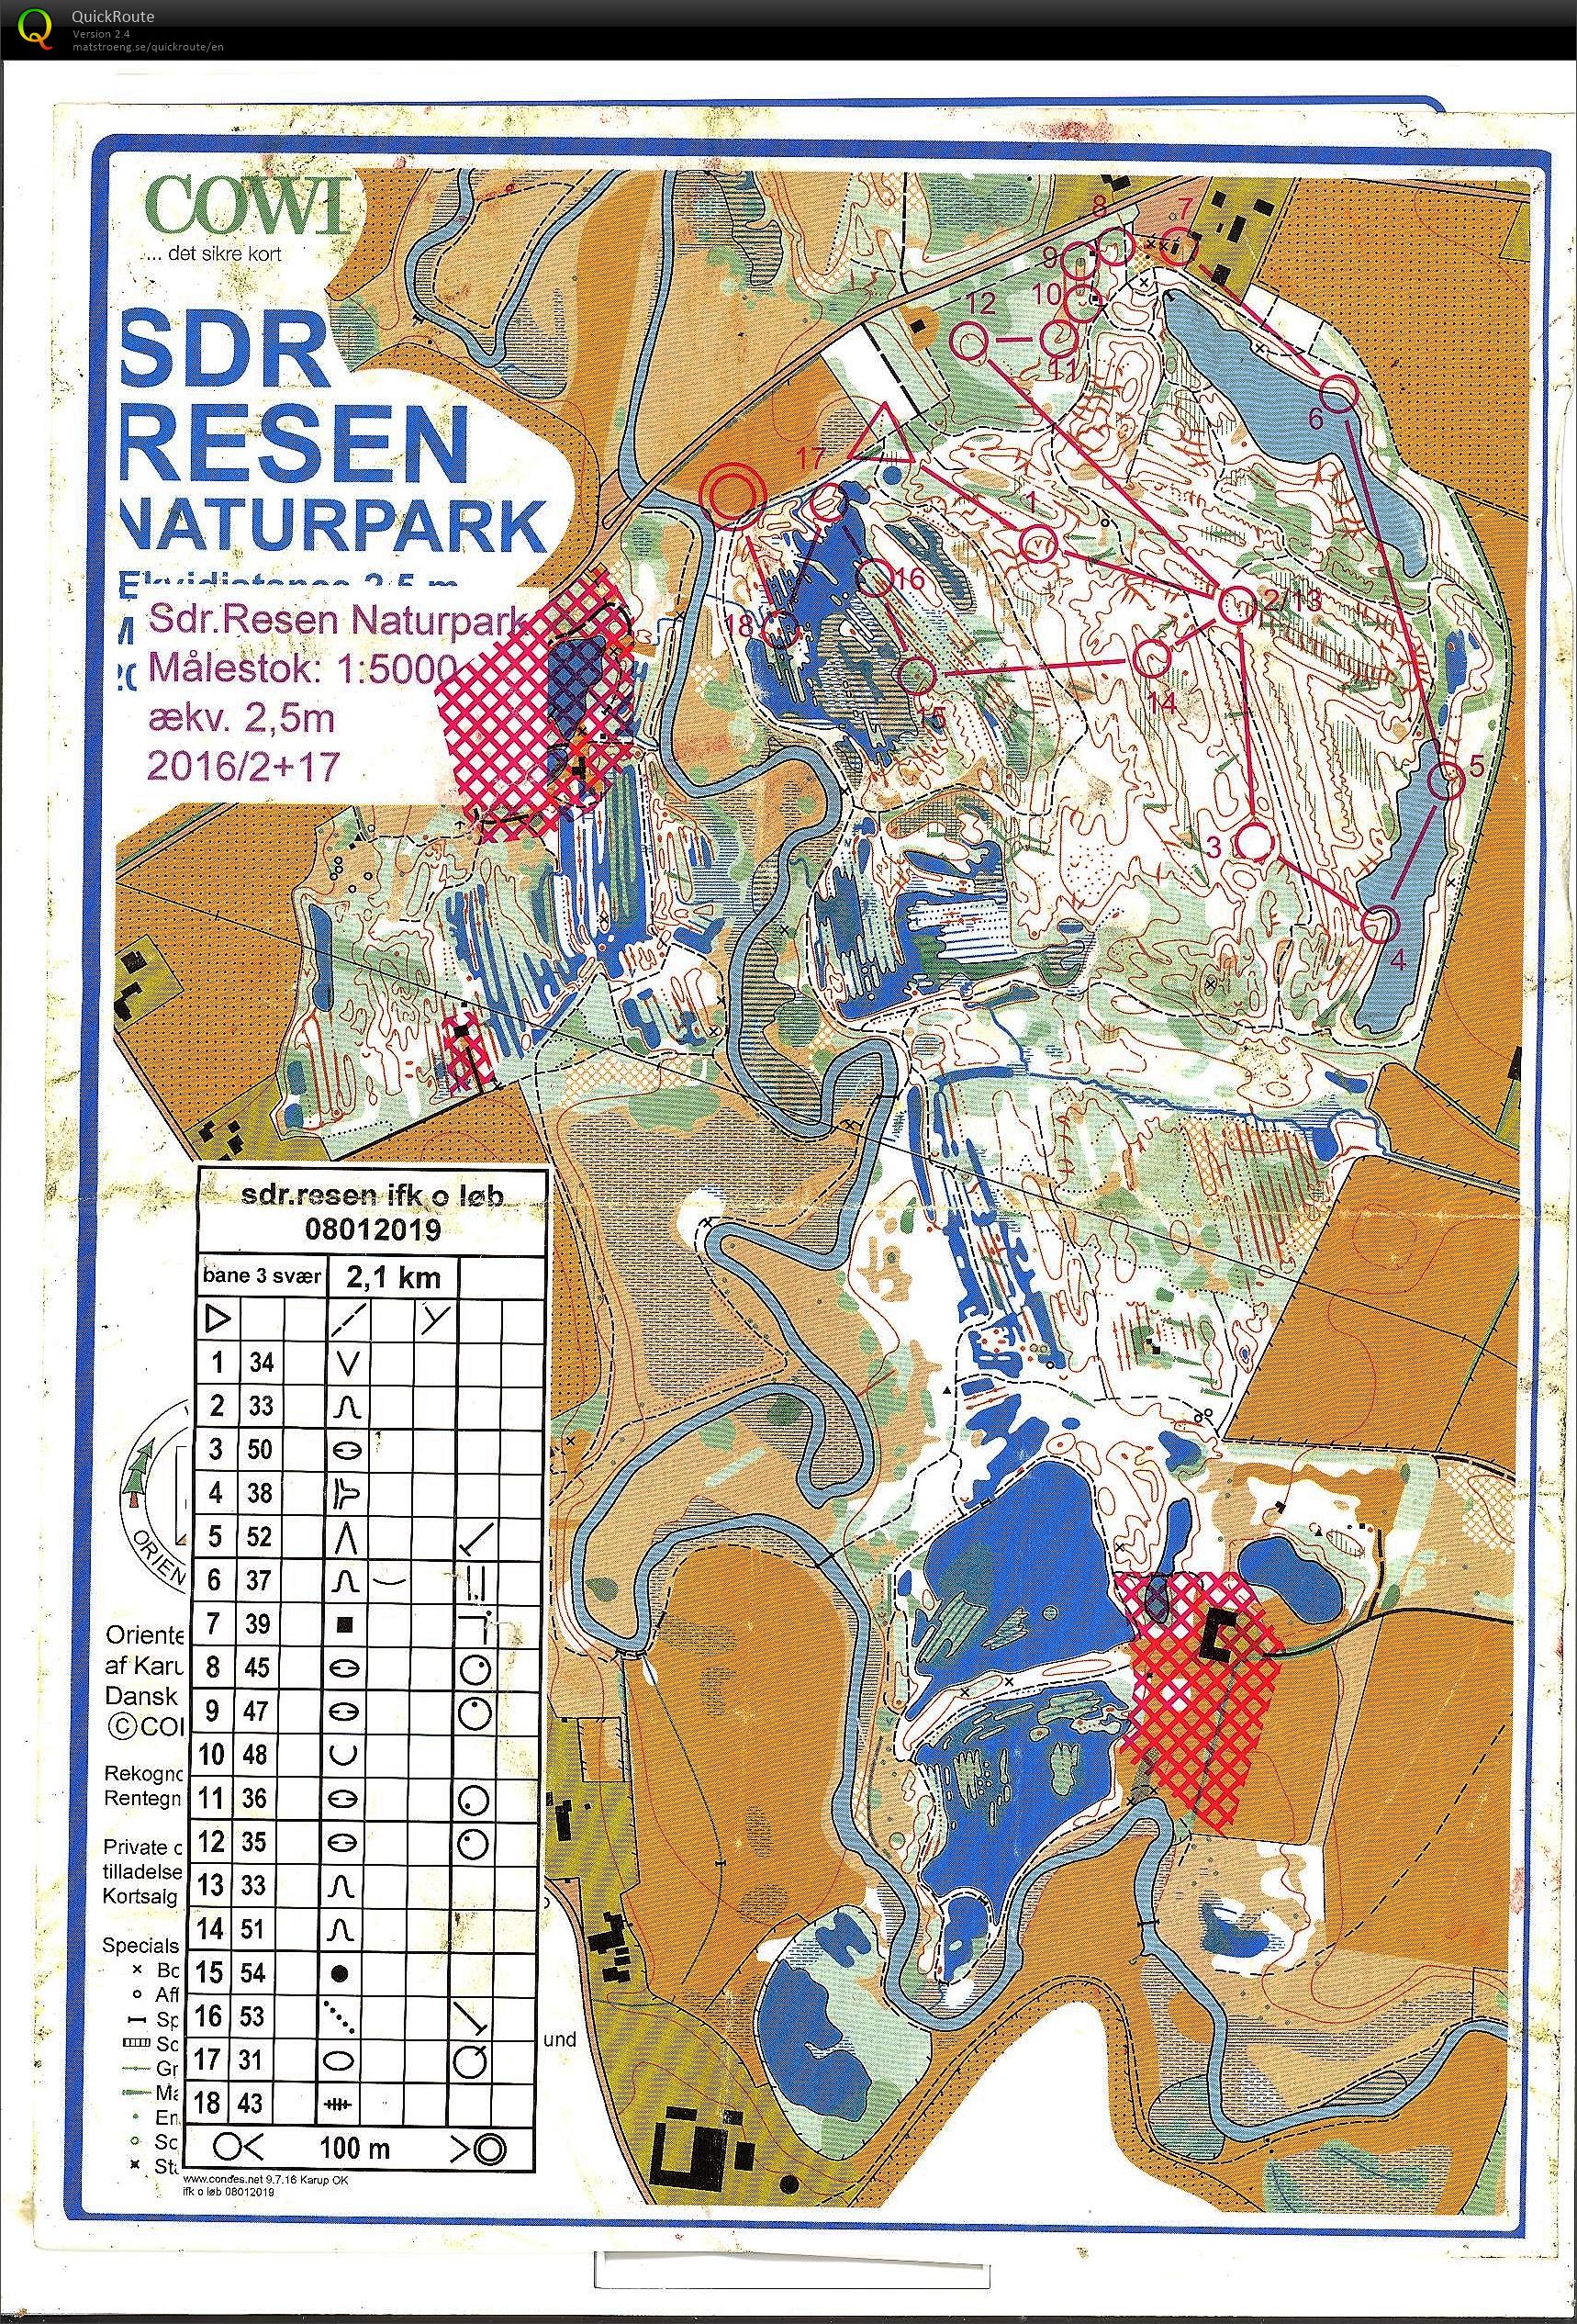 Resen Naturpark (2019-01-08)